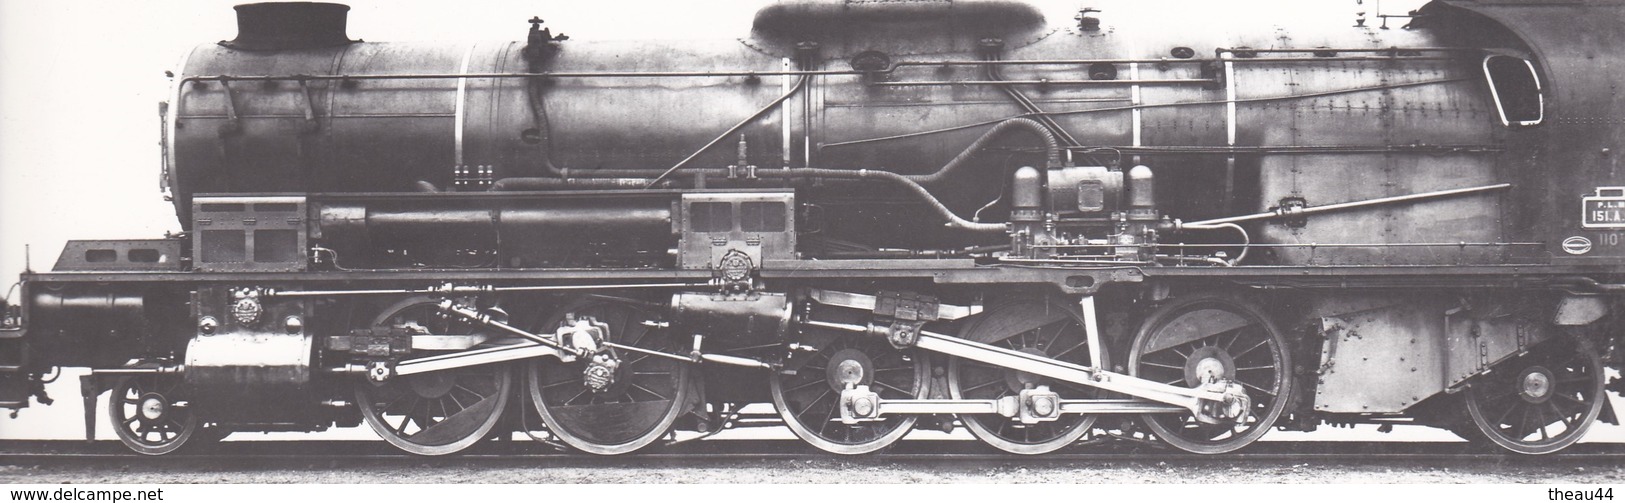 ¤¤  -  Cliché D'une Locomotive Du P.L.M. N° 151.A.1   -  Voir Description   -   ¤¤ - Materiale